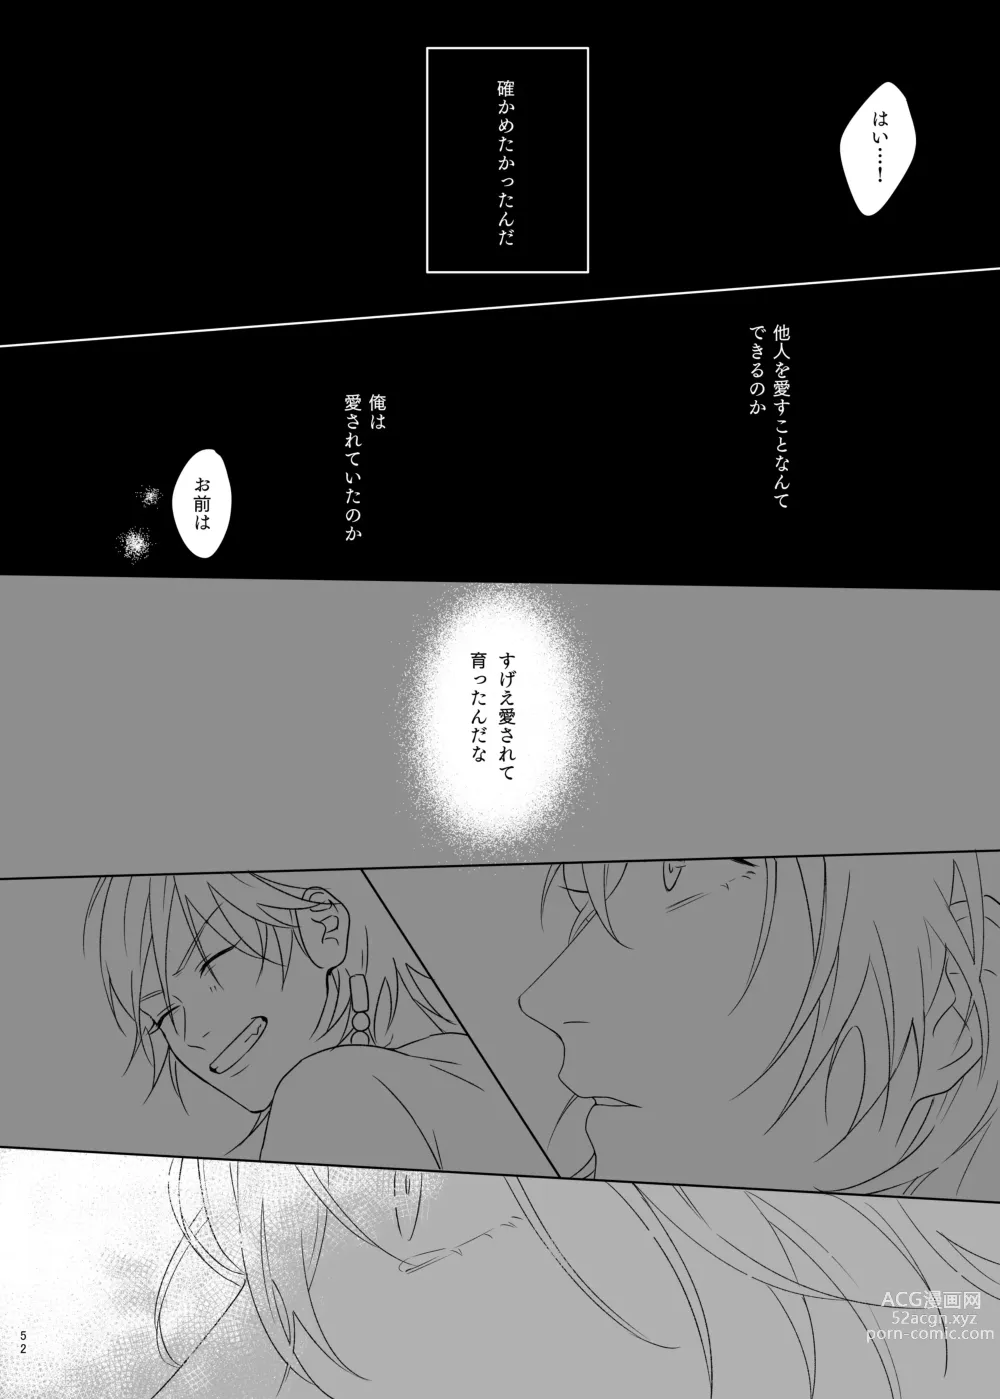 Page 52 of doujinshi Kami sama no ko